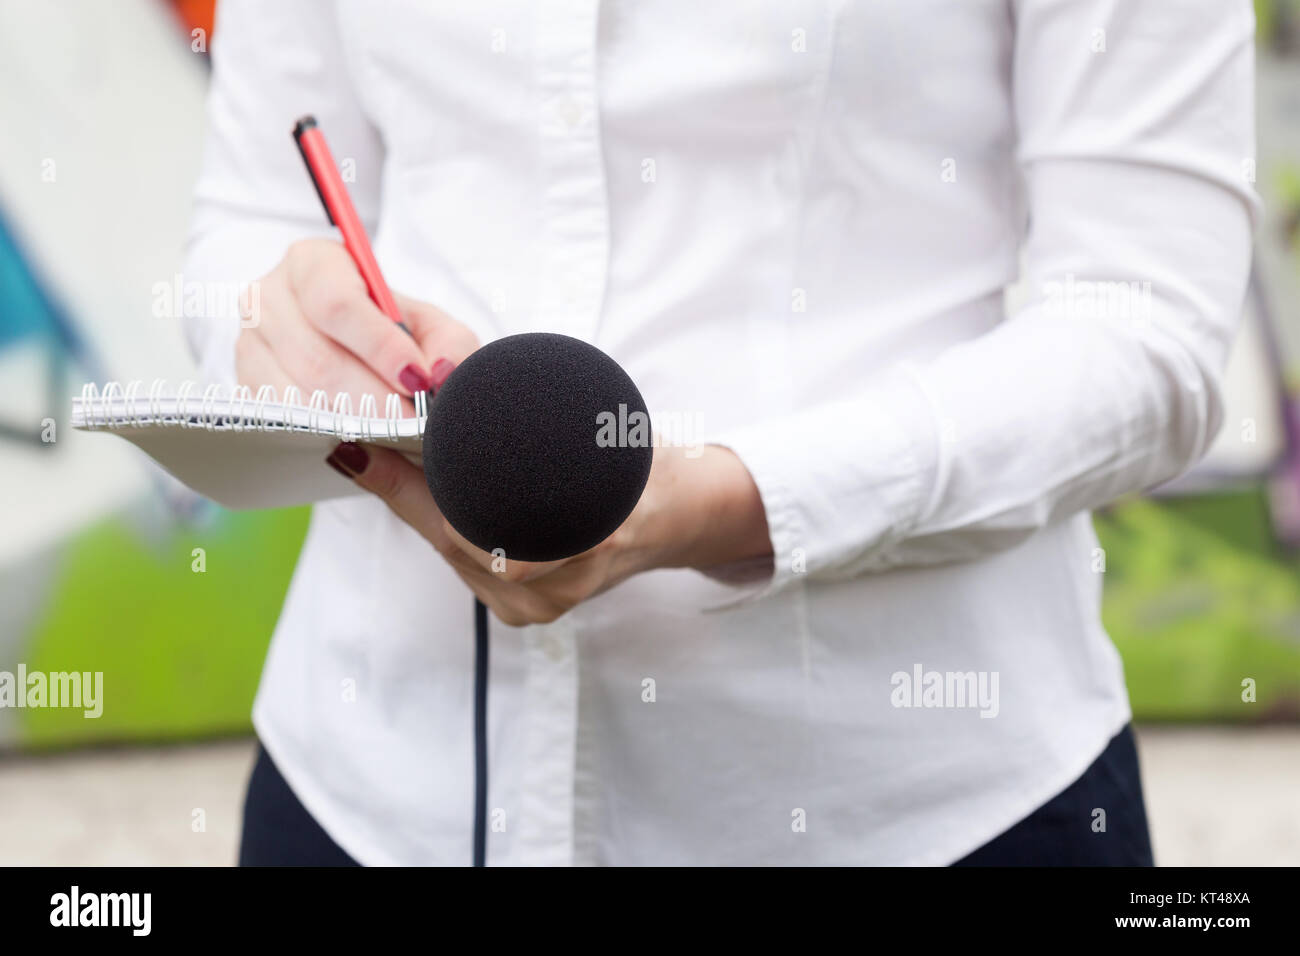 Femme journaliste ou journaliste à la conférence de presse, la rédaction de notes, holding microphone Banque D'Images